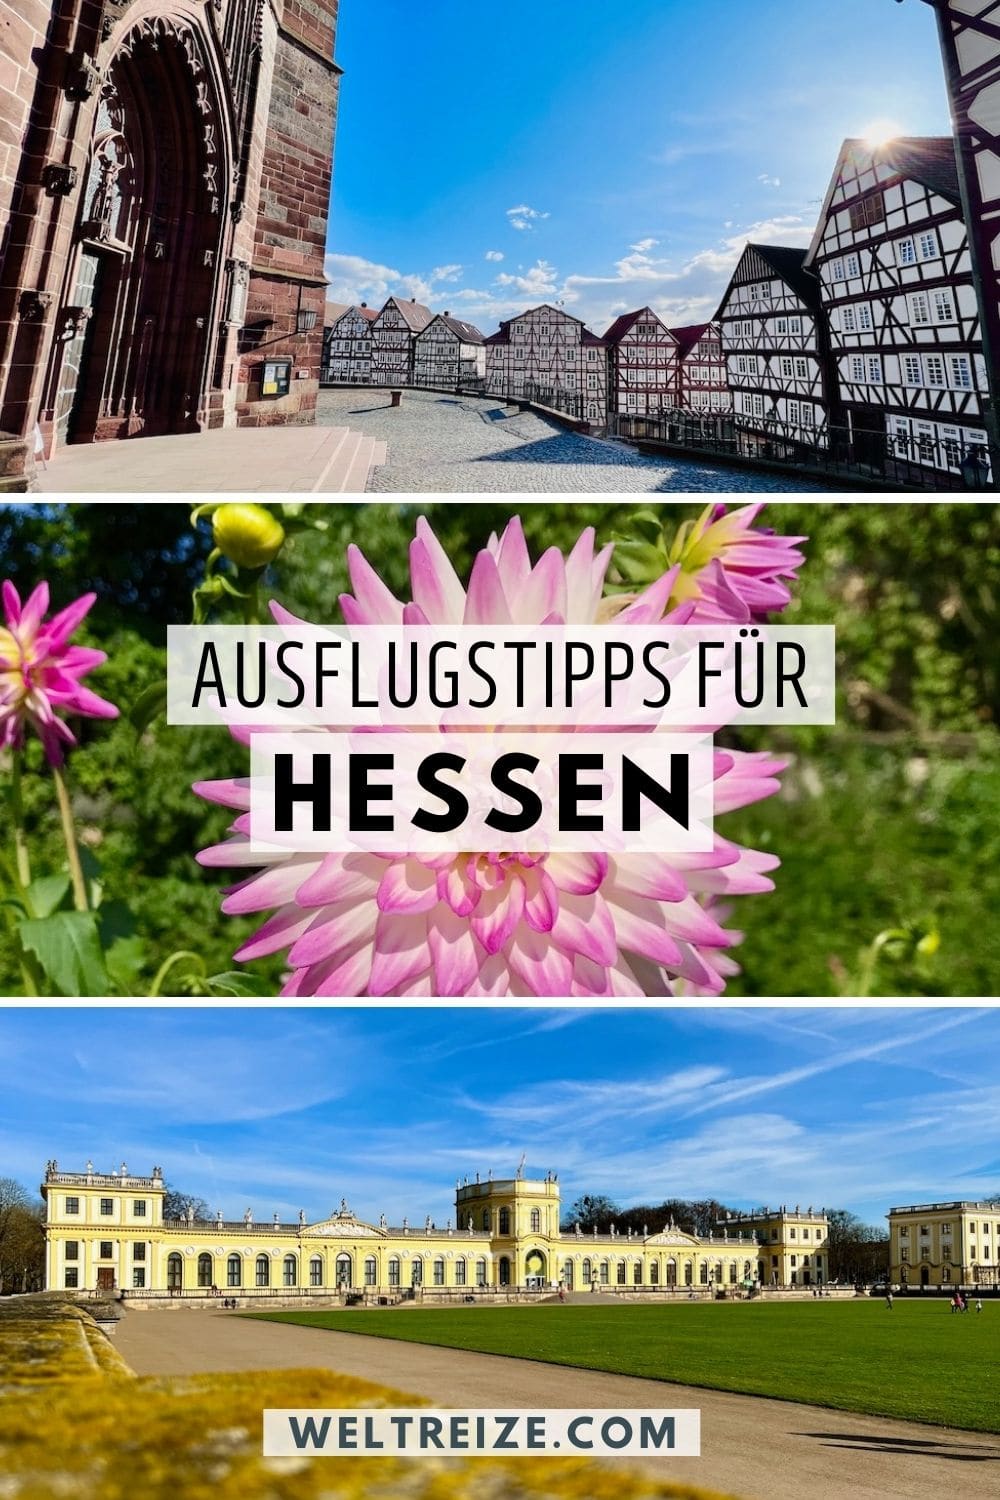 Hessen-Ausflugstipps weiterempfehlen